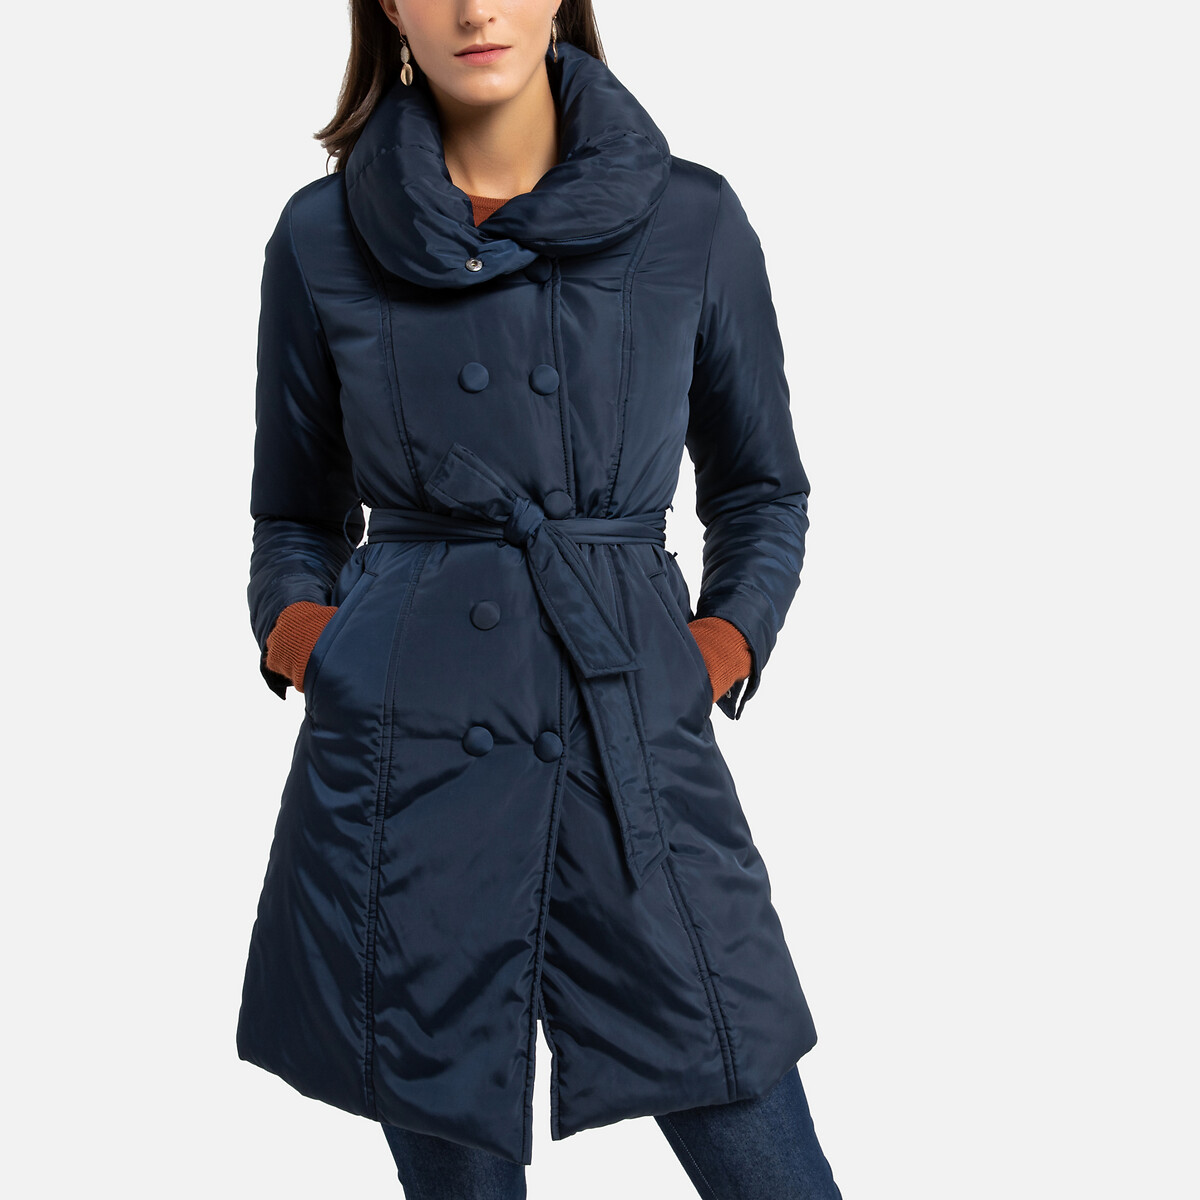 Куртка La Redoute Стеганая средней длины зимняя модель 38 (FR) - 44 (RUS) синий, размер 38 (FR) - 44 (RUS) Стеганая средней длины зимняя модель 38 (FR) - 44 (RUS) синий - фото 1